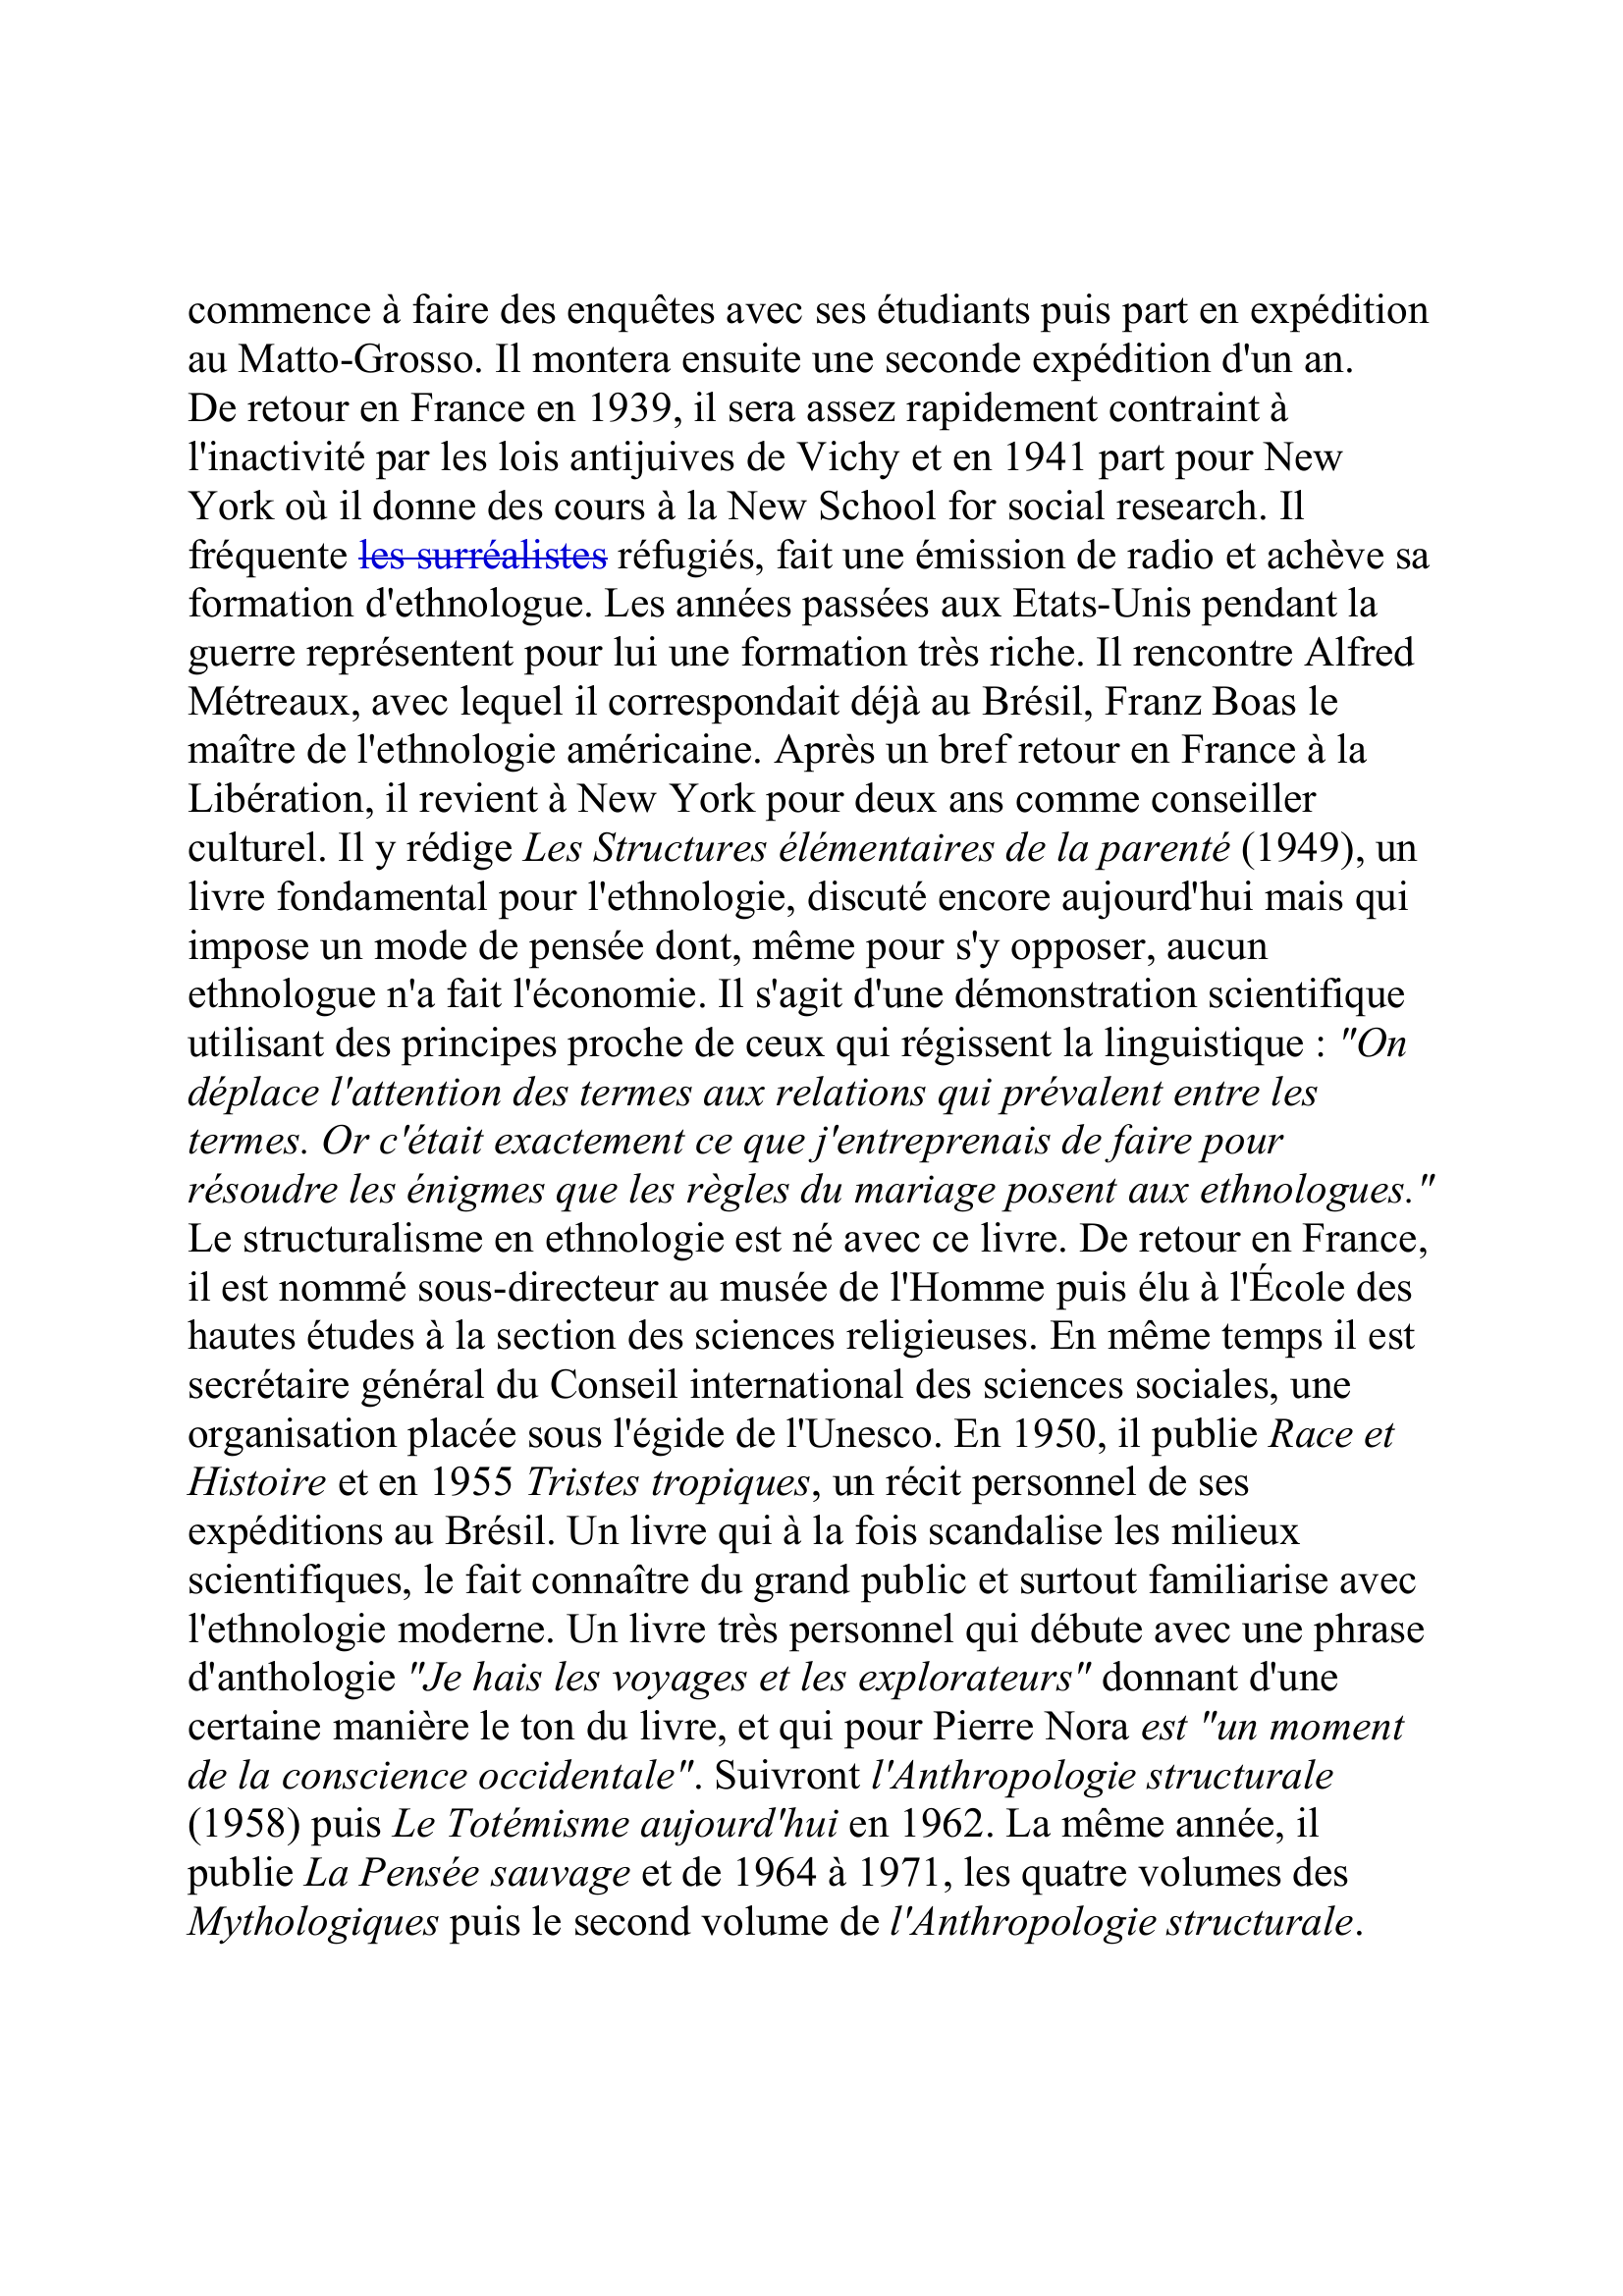 Prévisualisation du document LEVI-STRAUSS, Claude
(né le 28 novembre 1908)
Anthropologue
Né à Paris, Claude Lévi-Strauss a passé les vingt premières années de sa
vie rue Poussin, dans le 16e arrondissement.